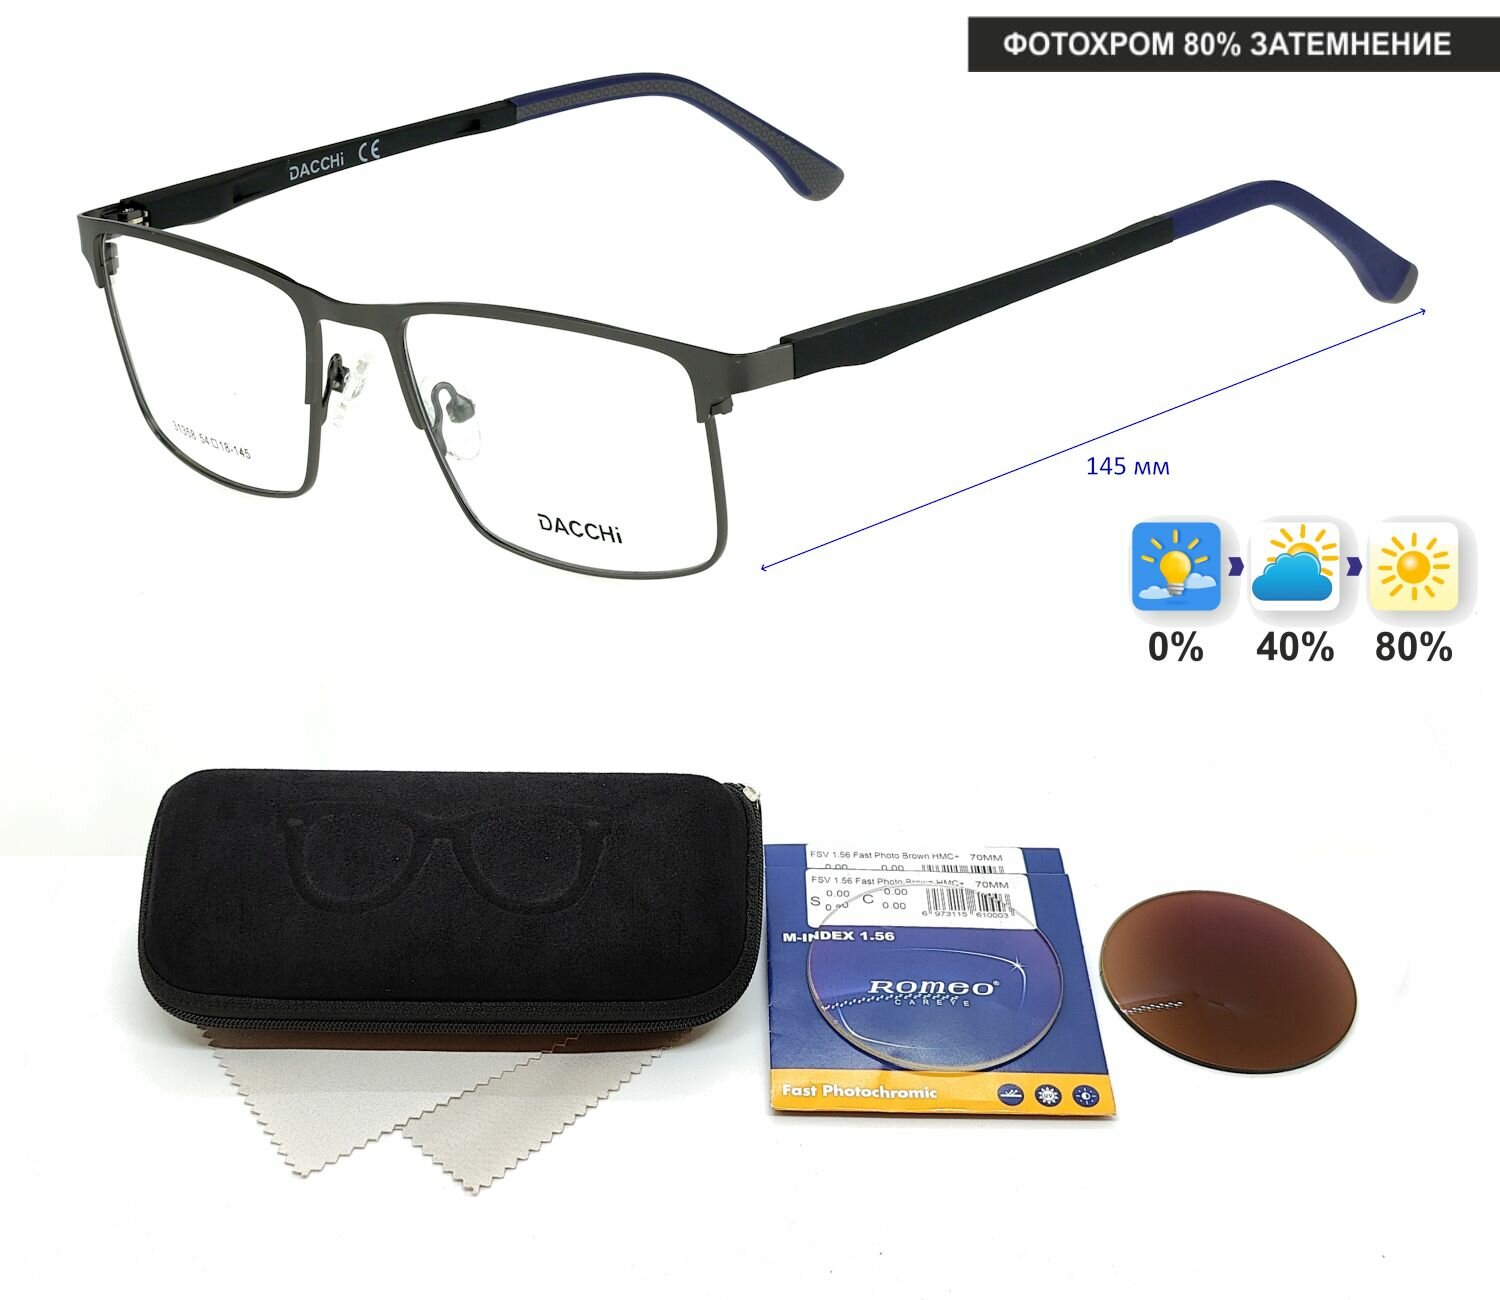 Фотохромные очки для чтения с футляром-змейка DACCHI мод. 31358 Цвет 3 с линзами ROMEO 1.56 FAST Photocolor BROWN, HMC+ +1.25 РЦ 64-66